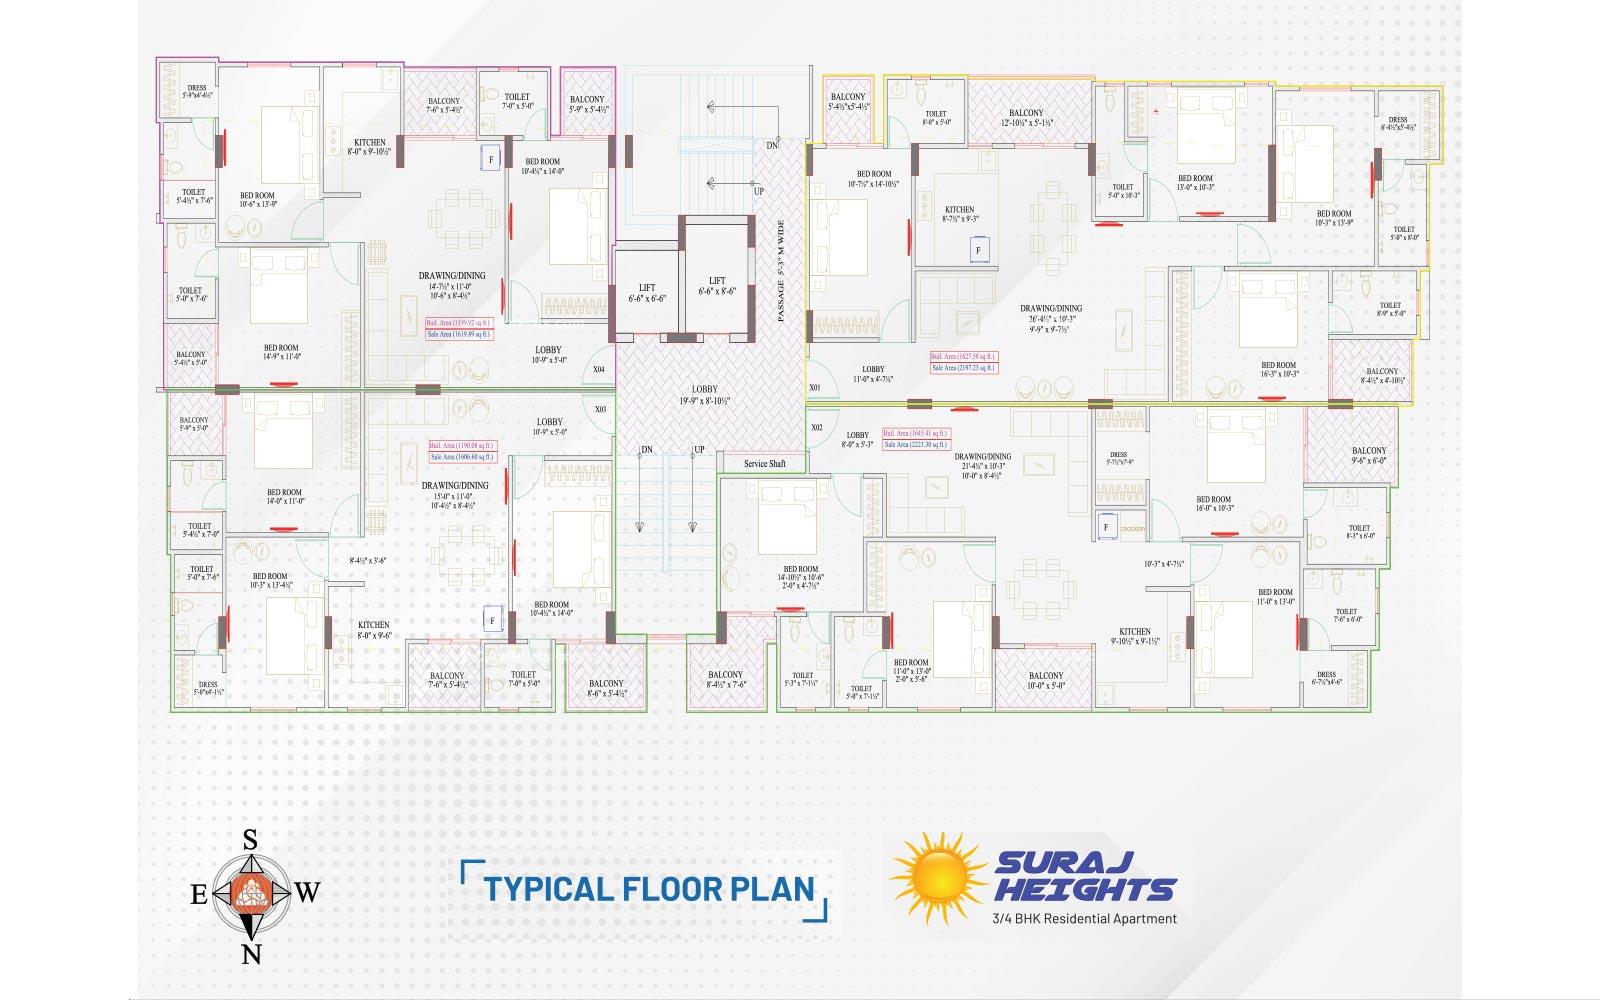 Suraj Heights Typical Floor Plan